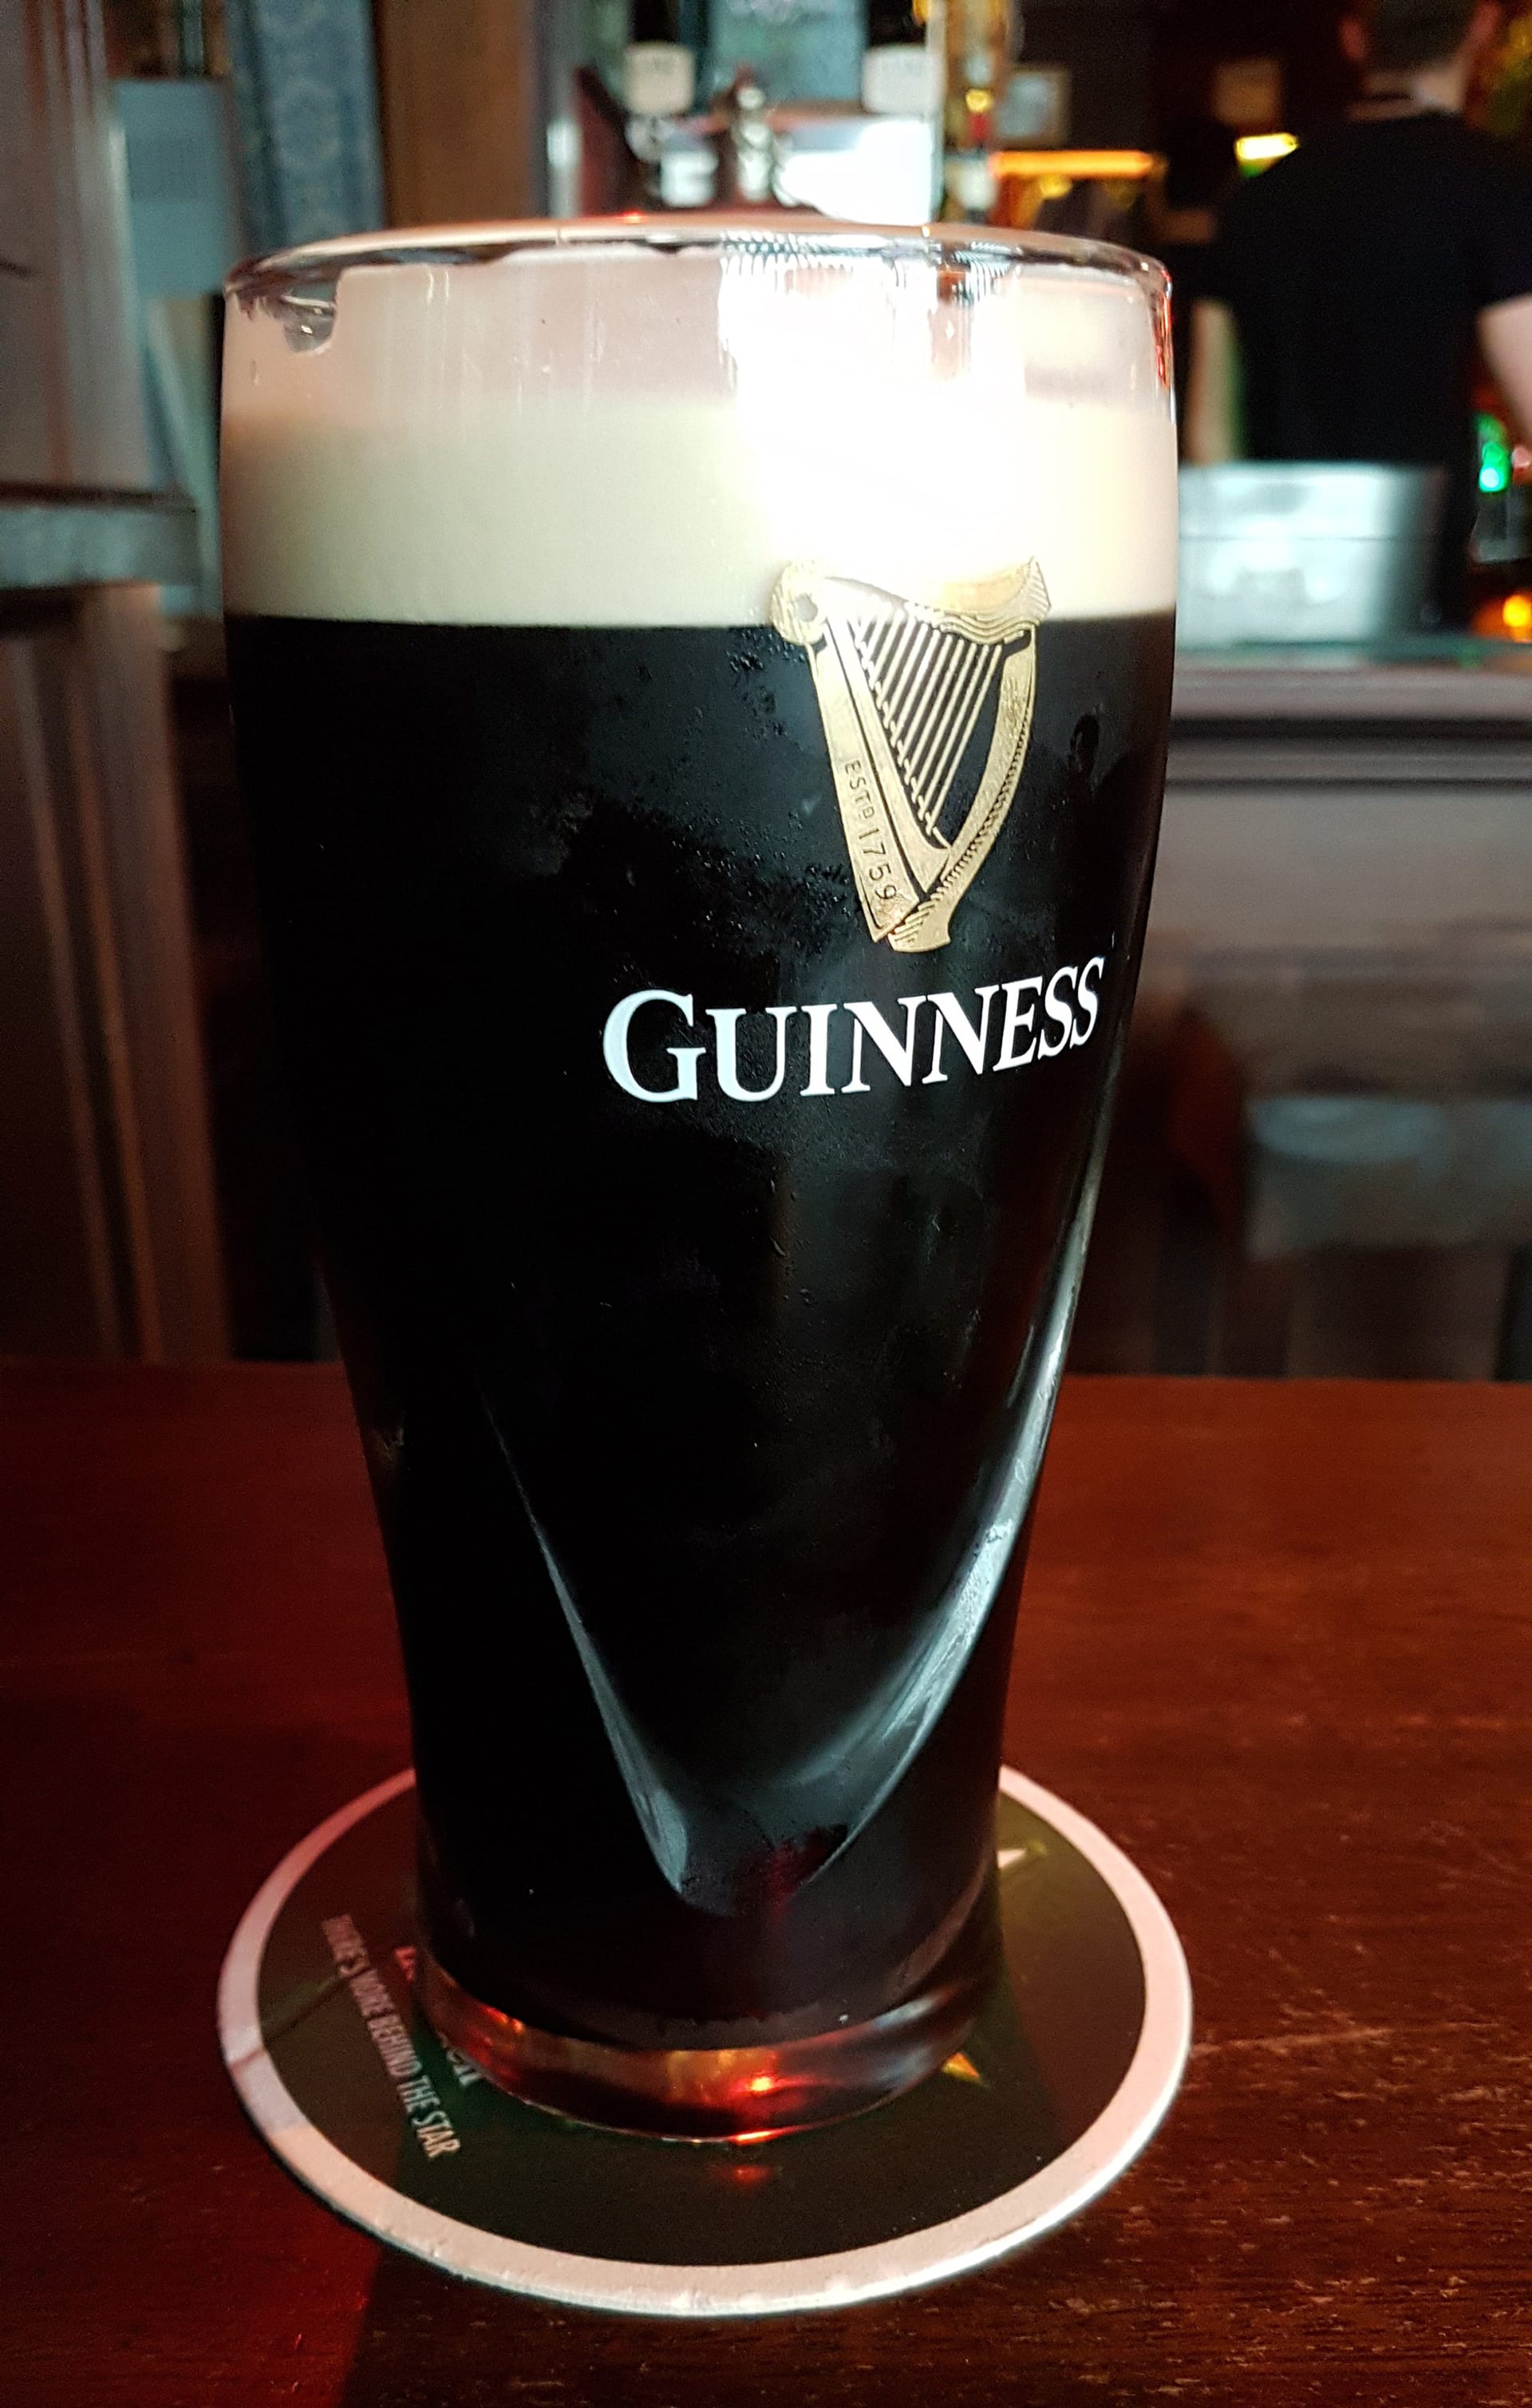 Ve vousech či knírech konzumentů skončí každoročně přes 92 000 litrů piva Guinness.